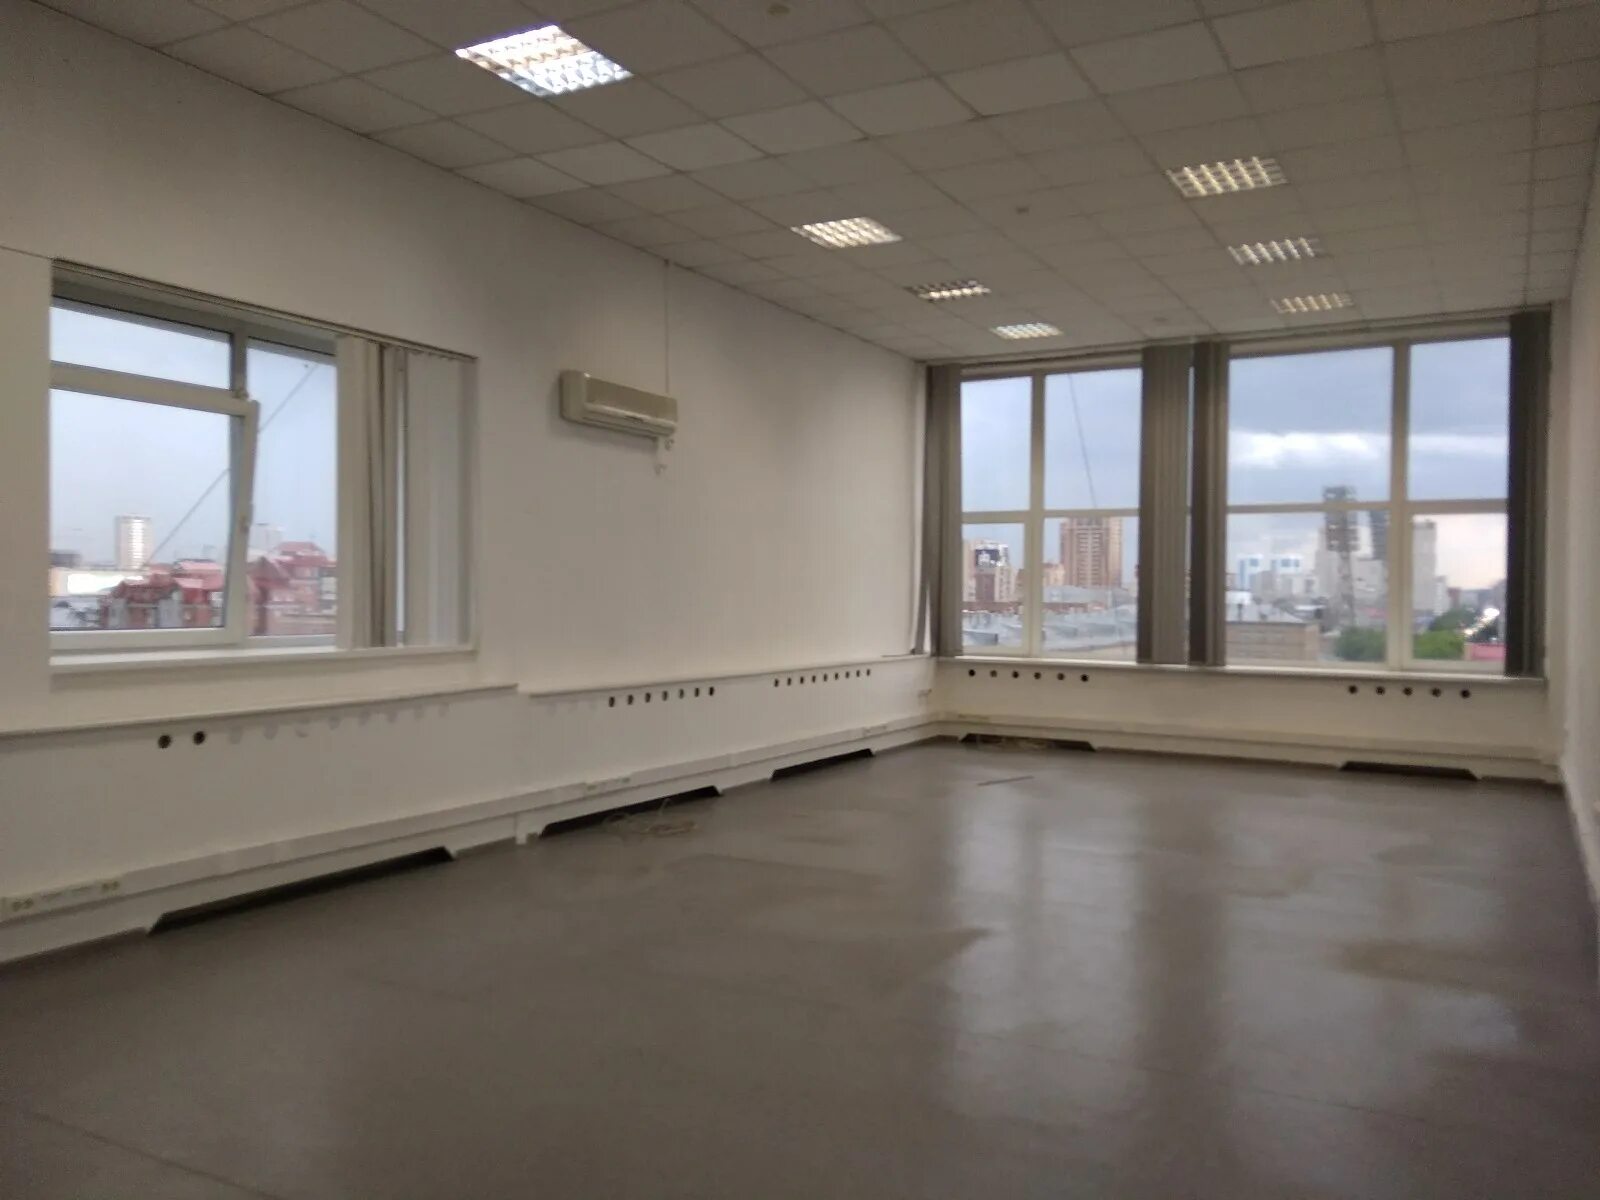 Коммерческое помещение 90 кв м. Офис Новосибирск. Аренда помещений в Новосибирске. Красный проспект офис 4.